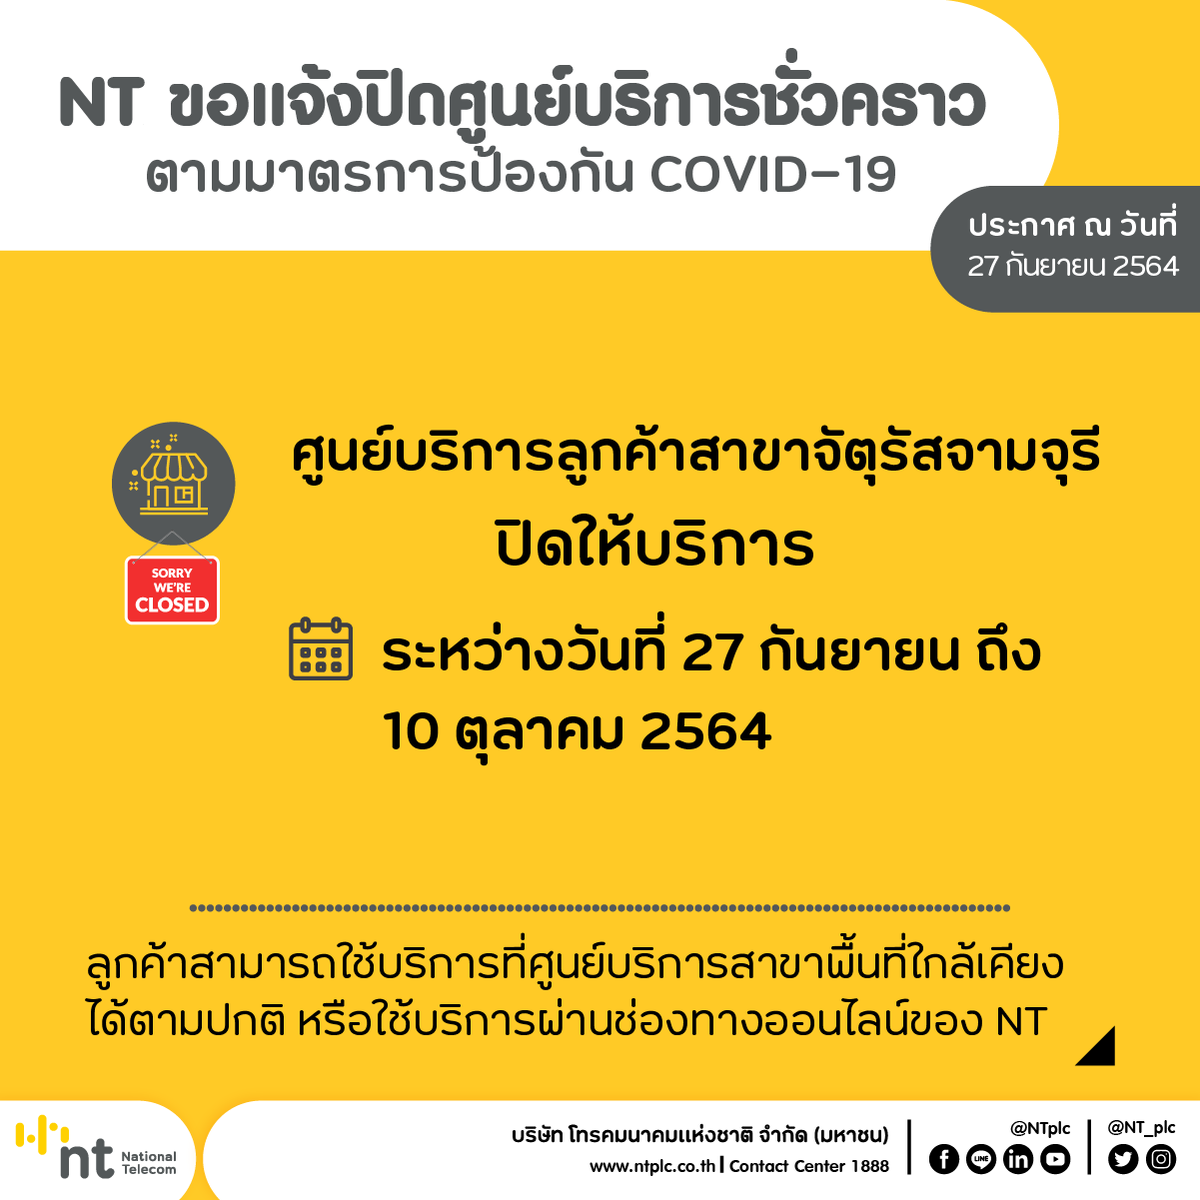 NT งดให้บริการศูนย์บริการลูกค้า สาขาจตุรัสจามจุรี ชั่วคราว ตั้งแต่วันที่ 27 กันยายน-10 ตุลาคม 2564 เปิดให้บริการในวันที่ 11 ตุลาคม 2564